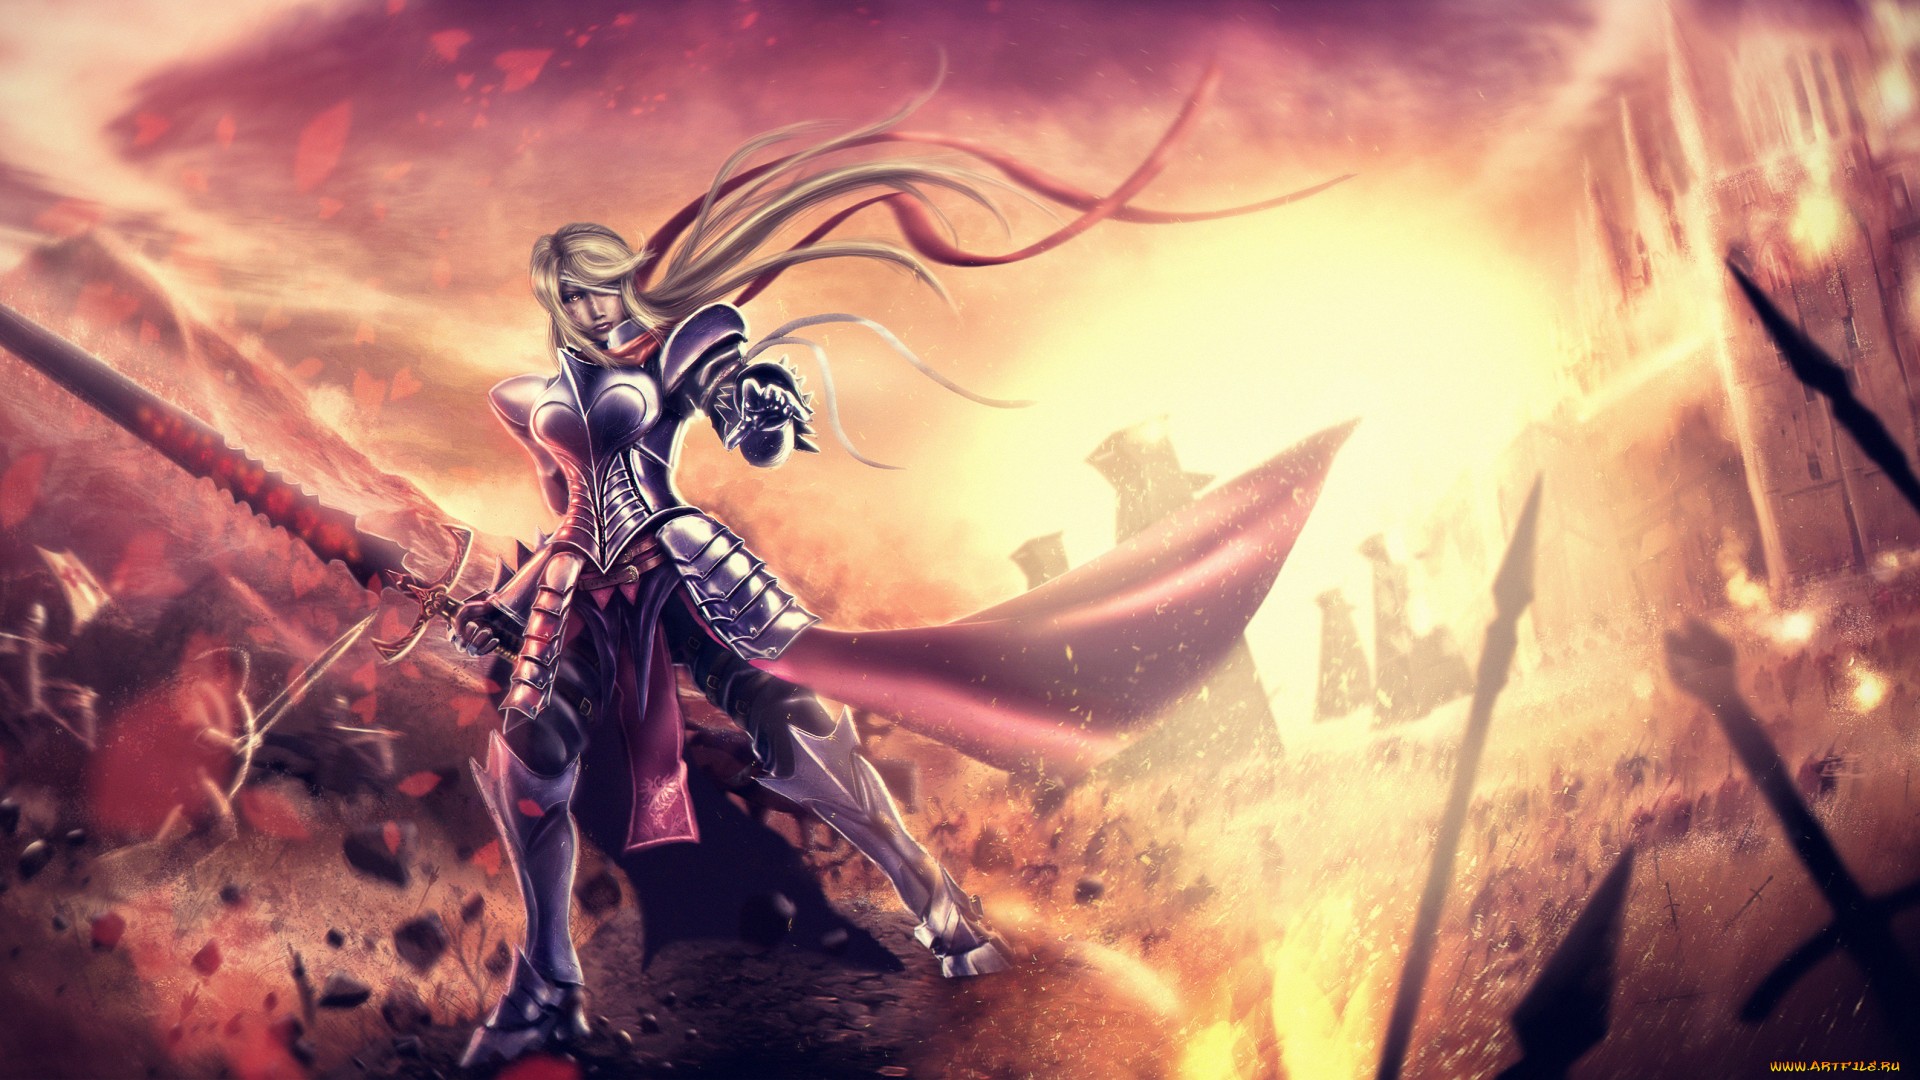 Free download wallpaper Fantasy, Fire, Knight, Battle, Armor, Sword, Women Warrior on your PC desktop